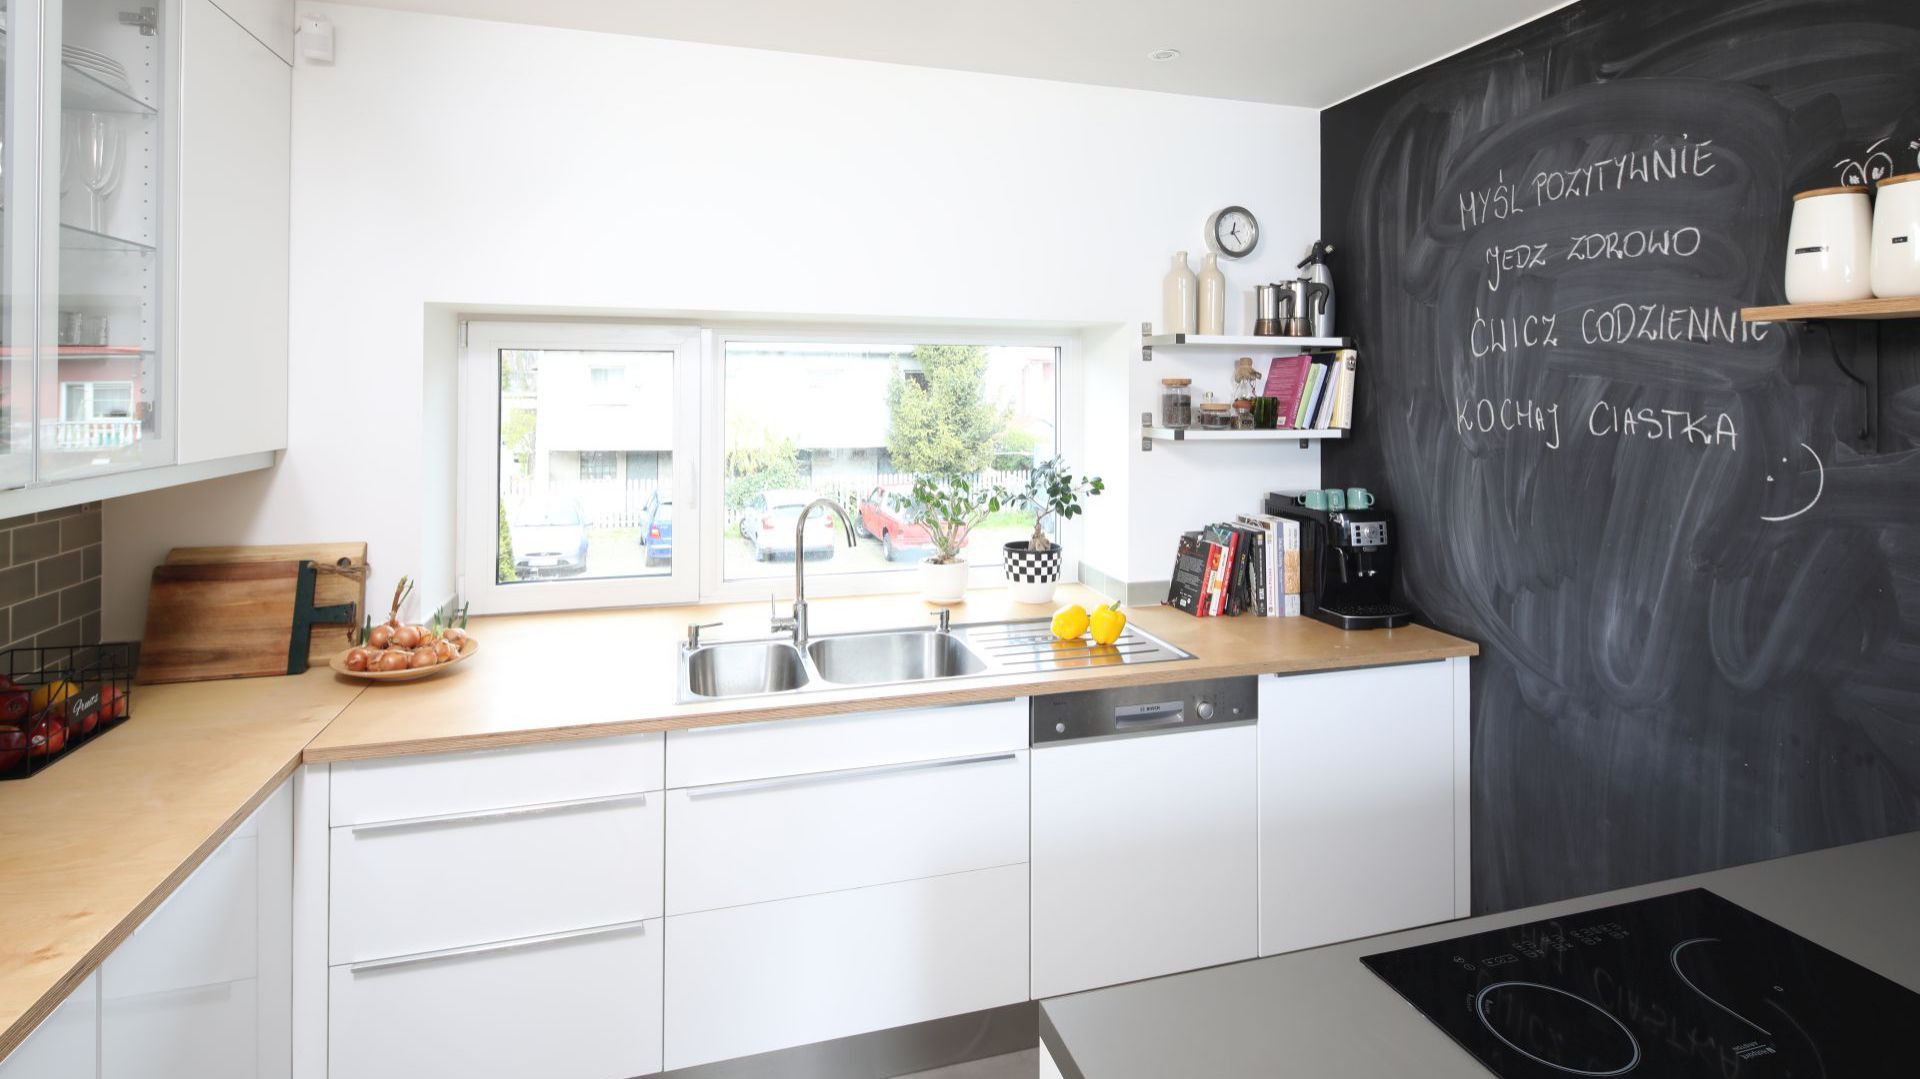 Farba tablicówka to idealne rozwiązanie do kuchni, z której korzystają dzieci. Fot. Bartosz Jarosz